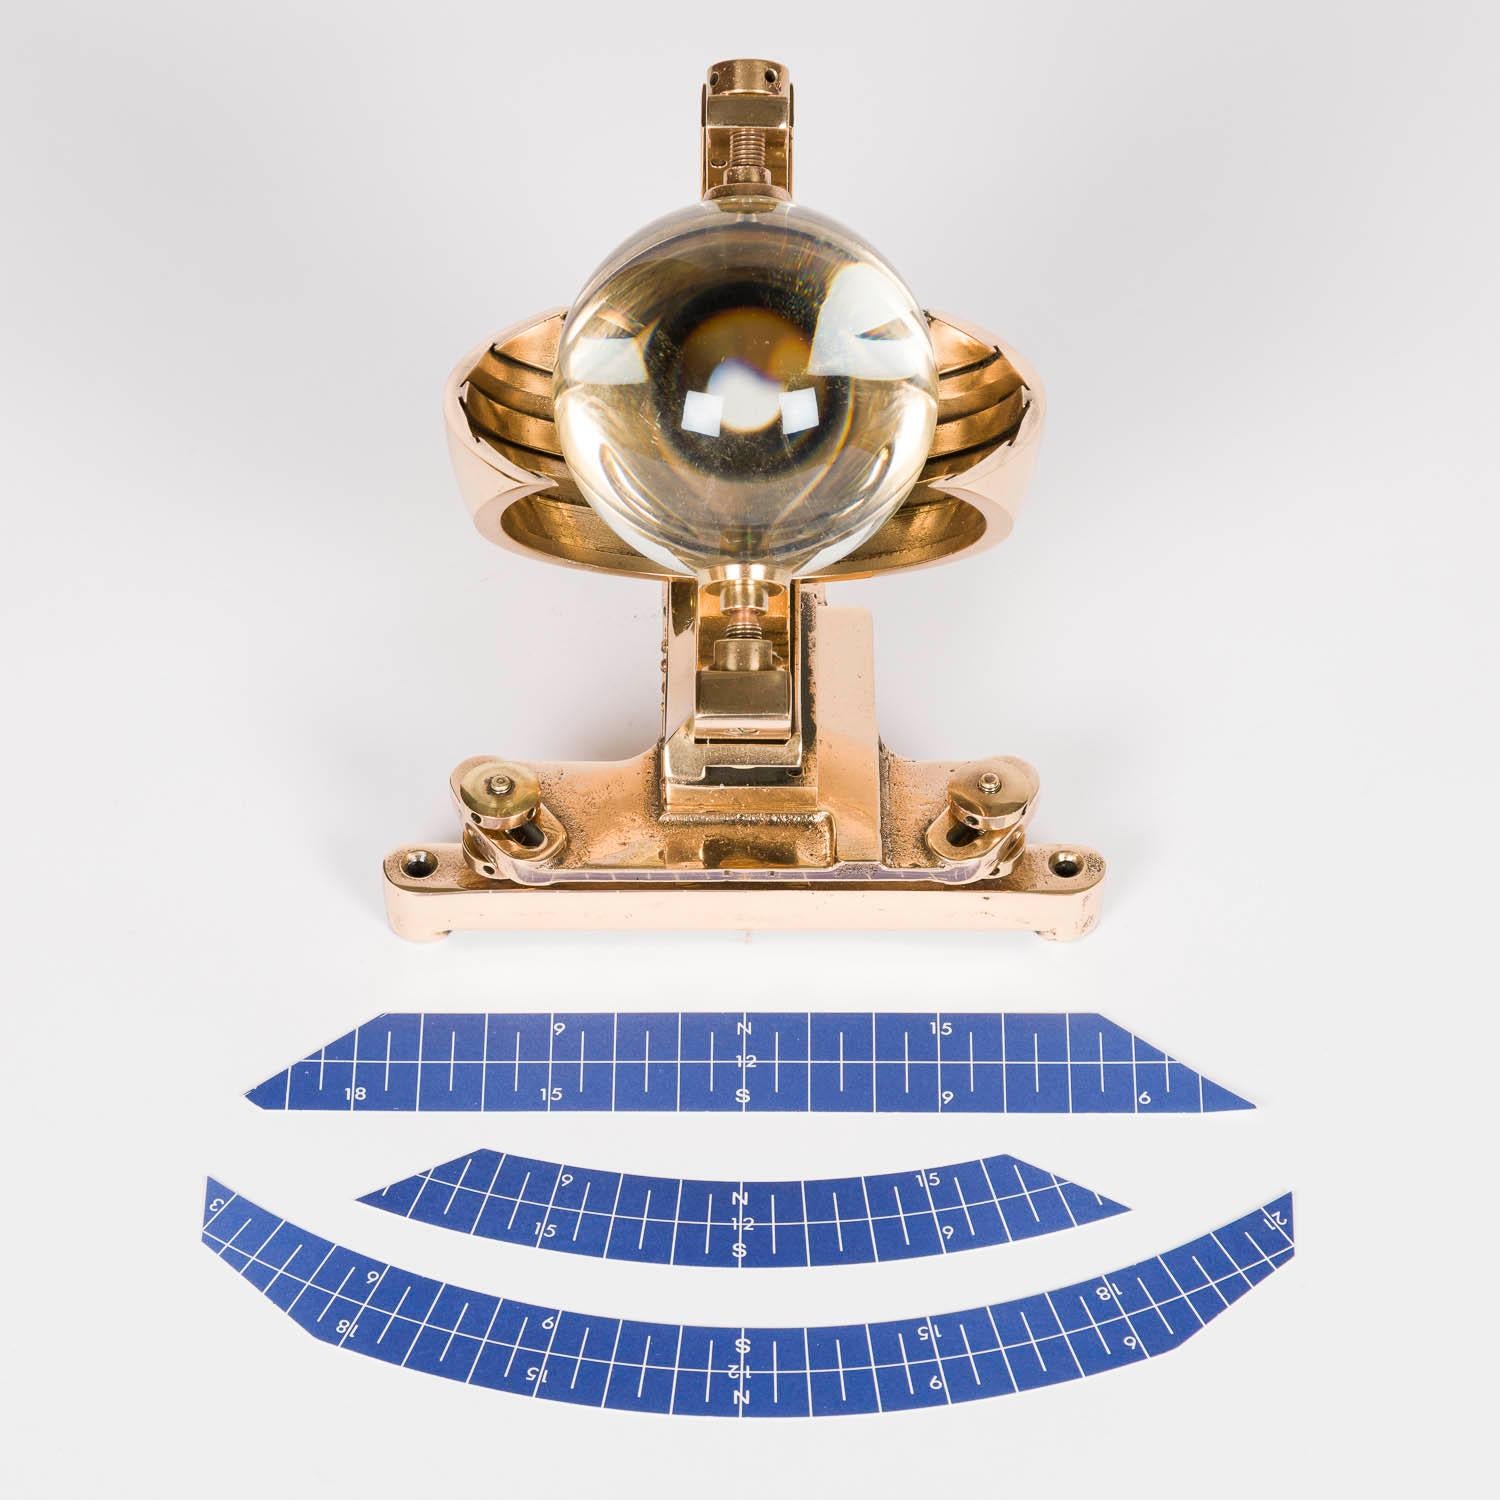 Eine Campbell-Stokes-Sonnenscheinflöte aus der Mitte des zwanzigsten Jahrhunderts, von Casella & Co, London.

Muster: Mk.III C 45- 65 (Breitengrade 45° - 65°, Nord oder Süd). 4-Zoll-Glaskugel.

Seriennummer: 6962

Gezeichnet: CASELLA LONDON